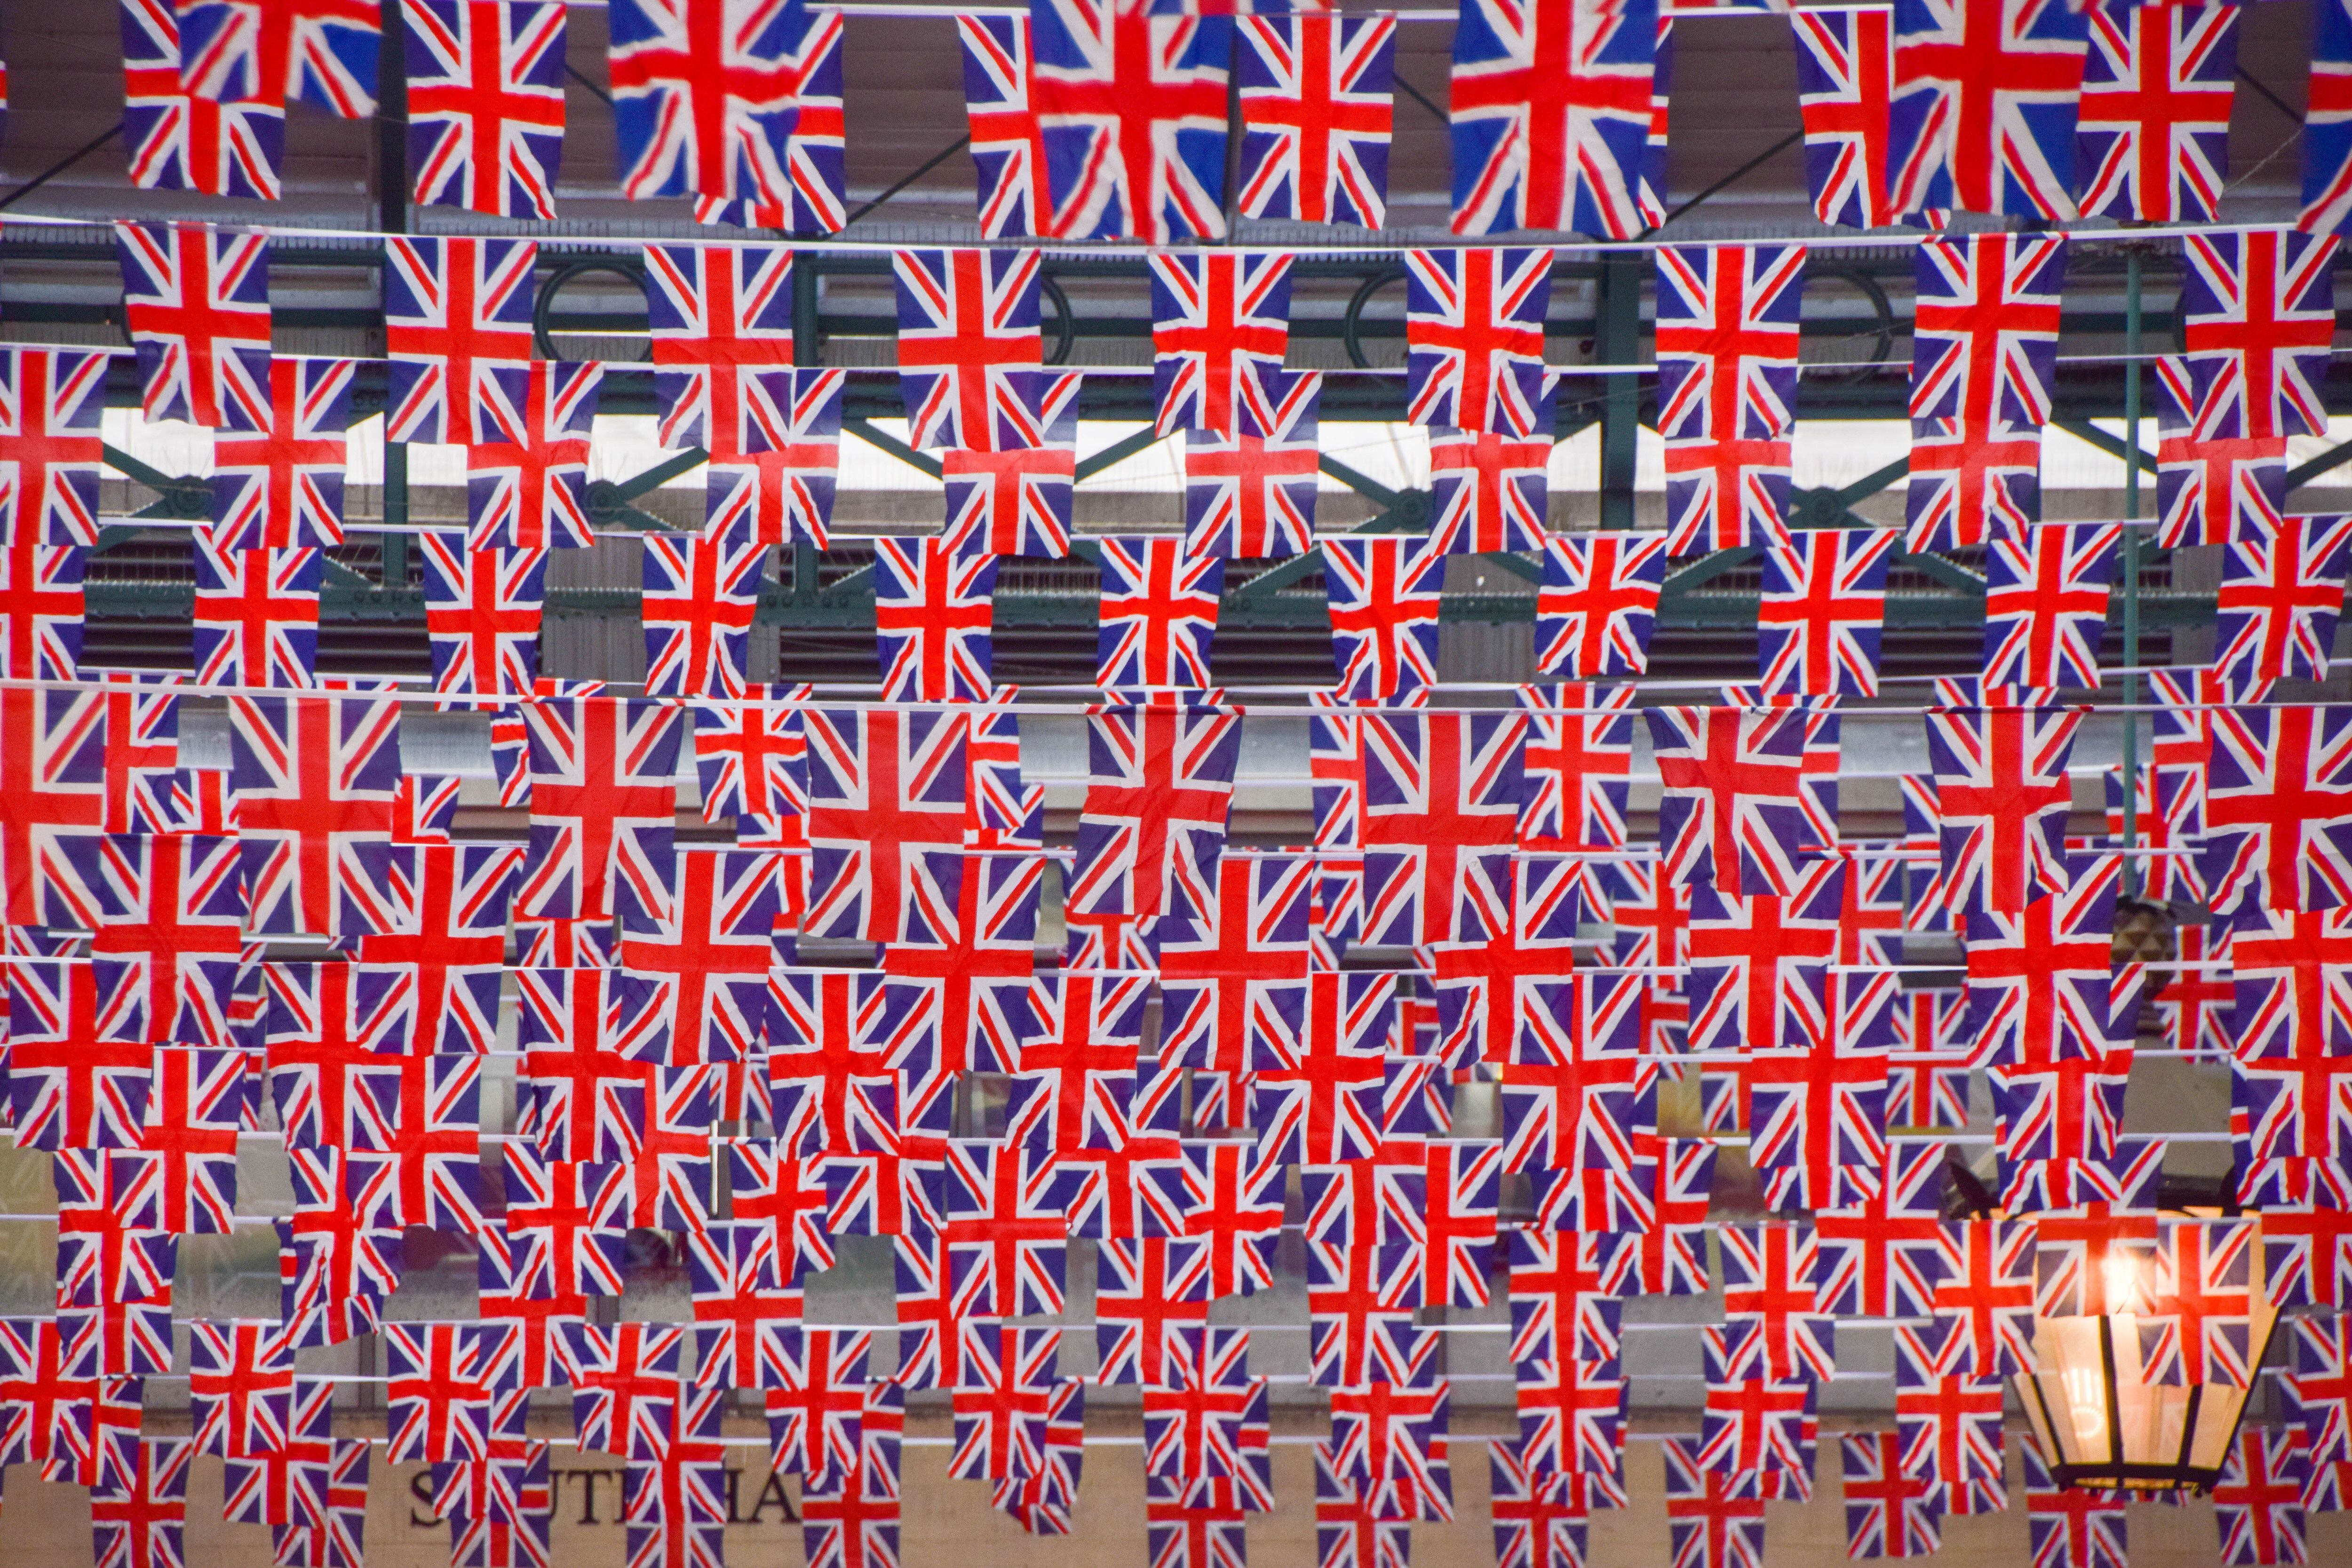 Centenares de banderas decoran Covent Garden en las preparaciones para la coronación de Carlos III.